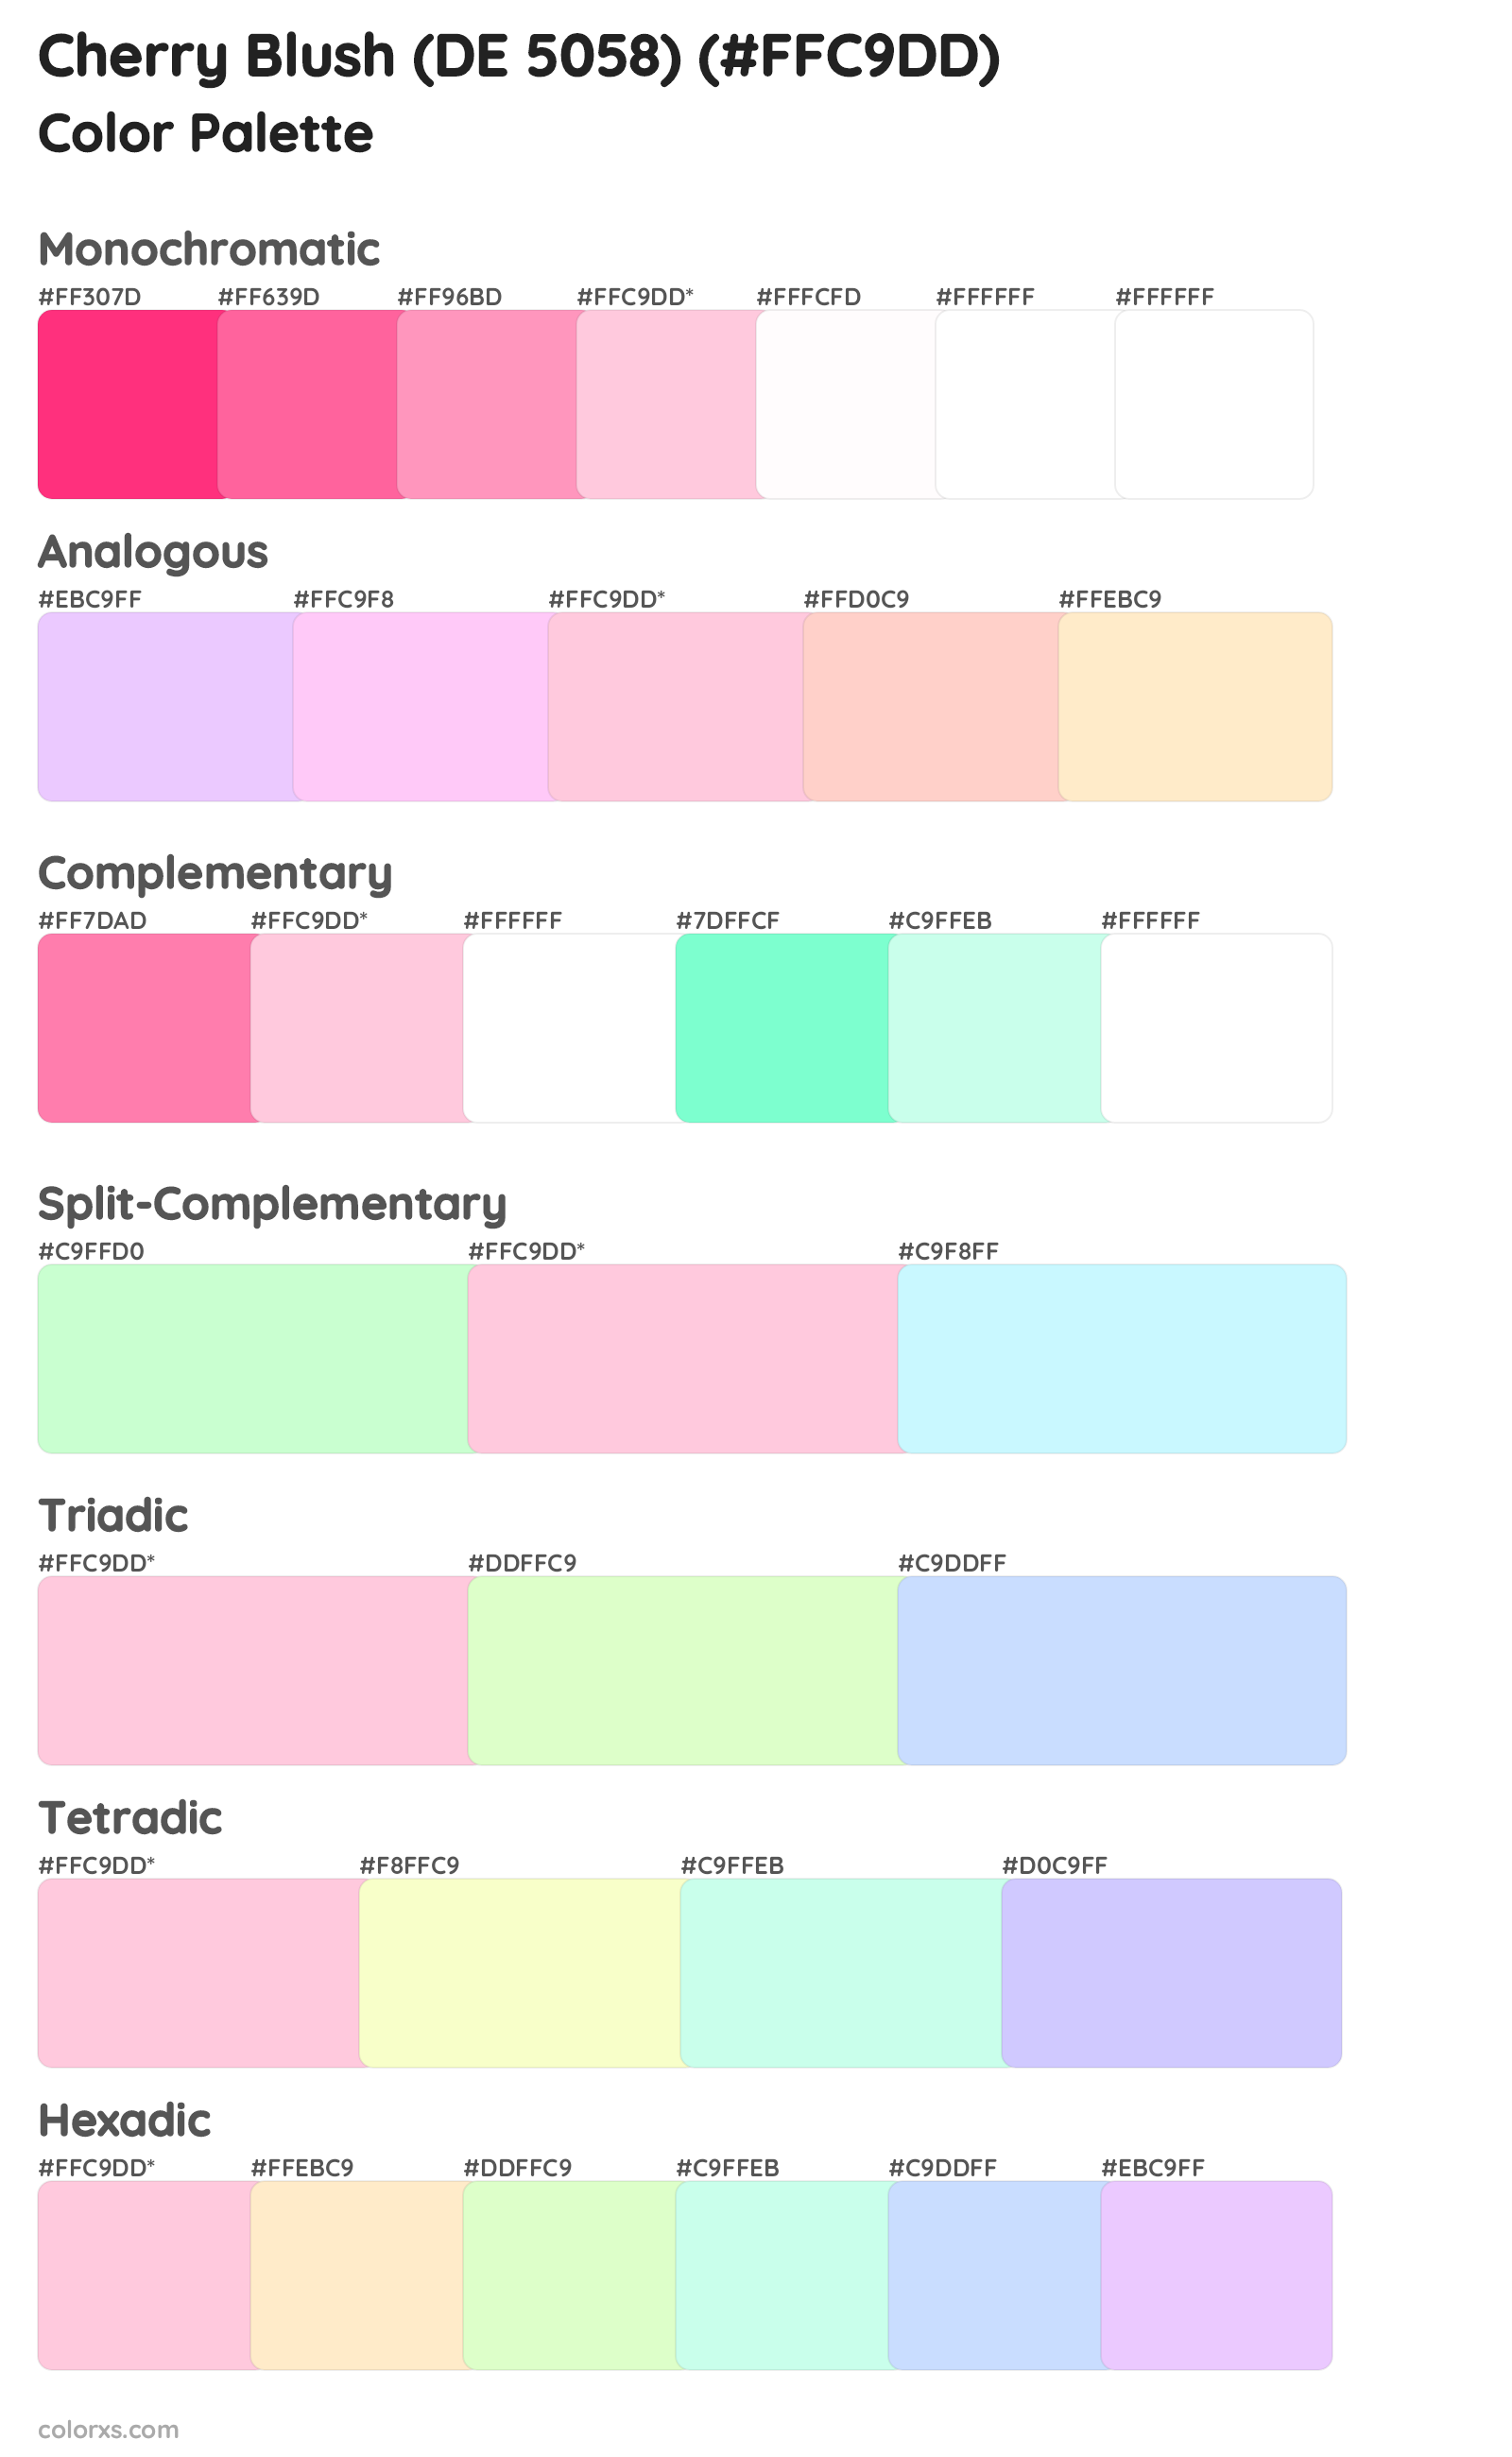 Cherry Blush (DE 5058) Color Scheme Palettes